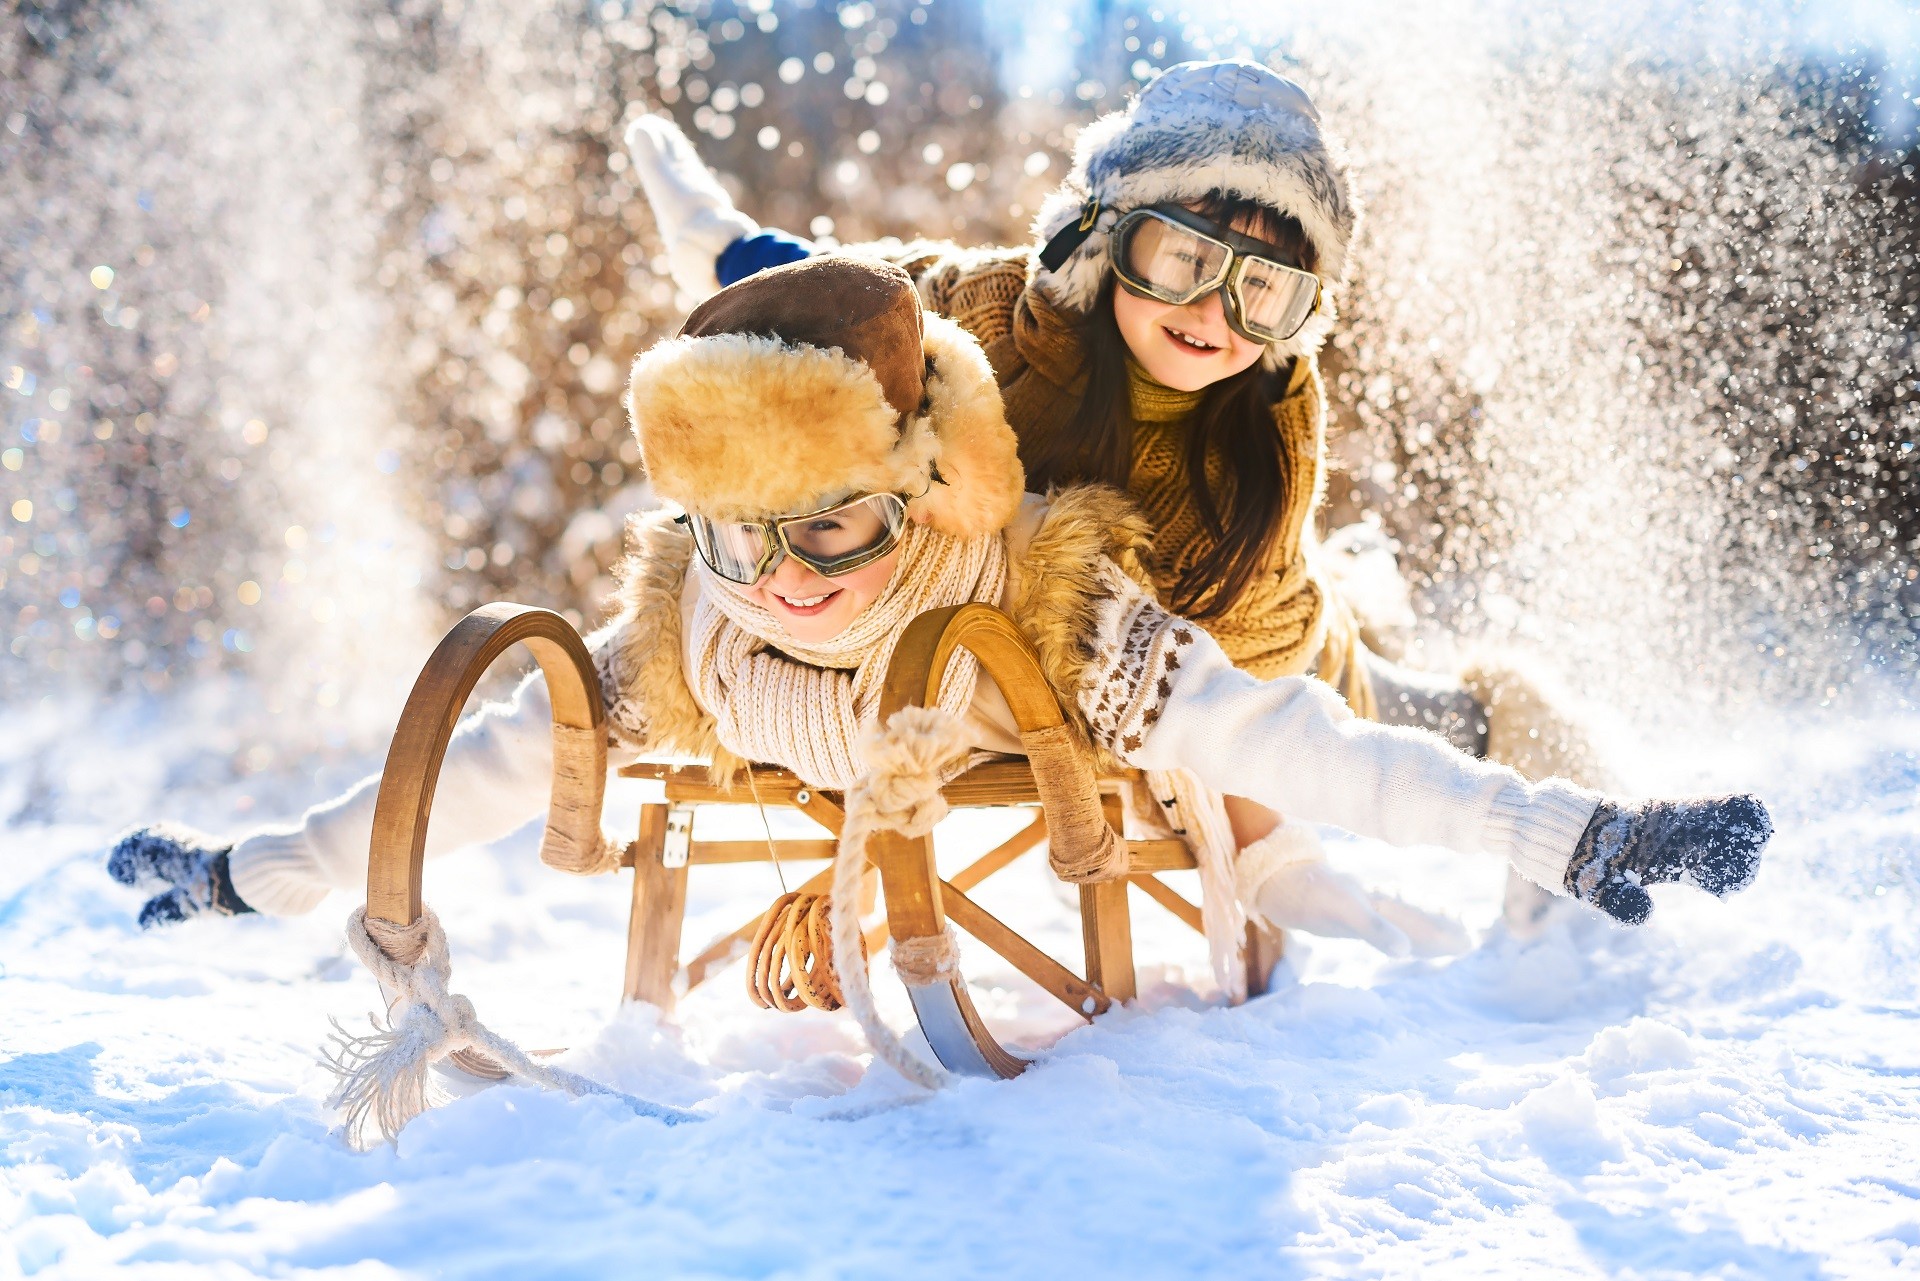 6 Fun Winter Activities for Kids